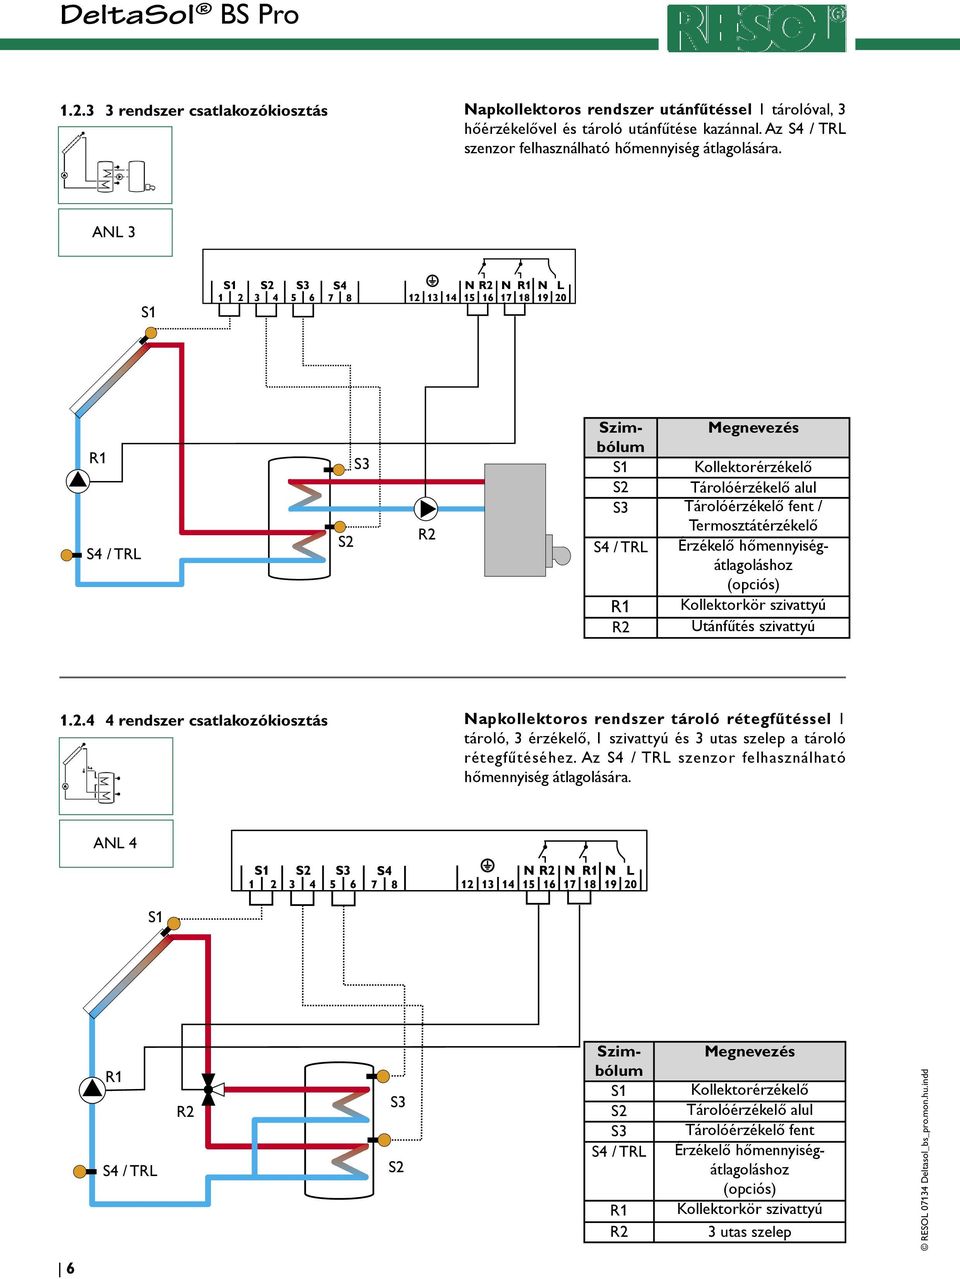 szivattyú 1.2.4 4 rendszer csatlakozókiosztás Napkollektoros rendszer tároló rétegfűtéssel 1 tároló, 3 érzékelő, 1 szivattyú és 3 utas szelep a tároló rétegfűtéséhez.